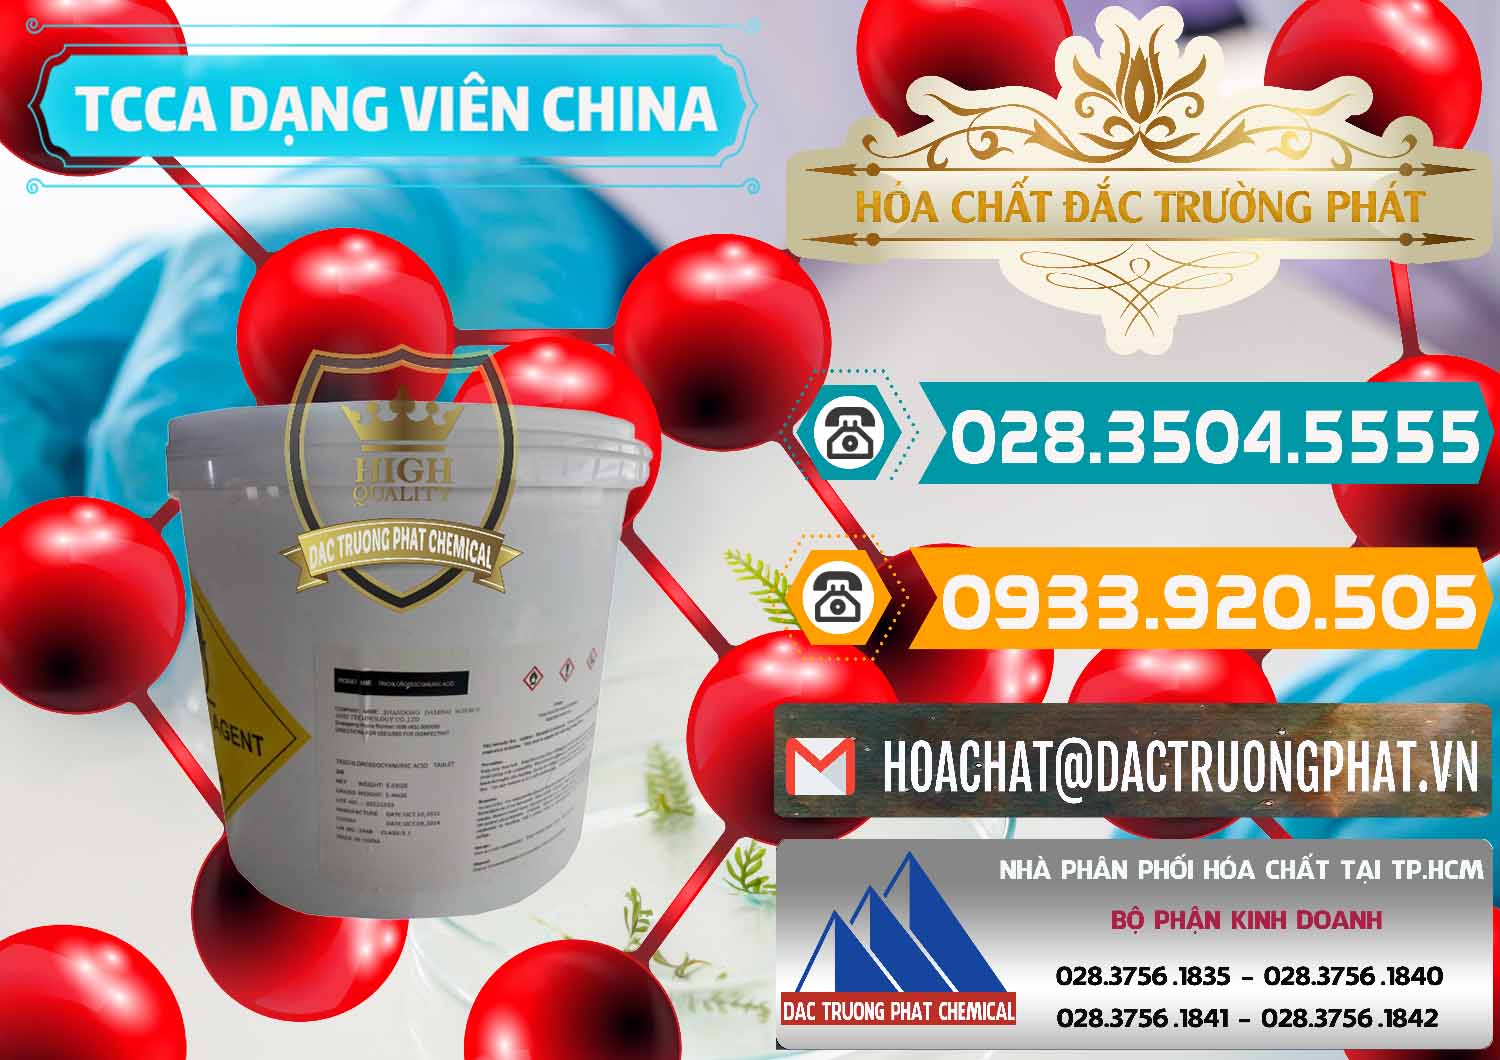 Cty chuyên bán ( cung cấp ) TCCA - Acid Trichloroisocyanuric Dạng Viên Thùng 5kg Trung Quốc China - 0379 - Cty bán và phân phối hóa chất tại TP.HCM - congtyhoachat.vn